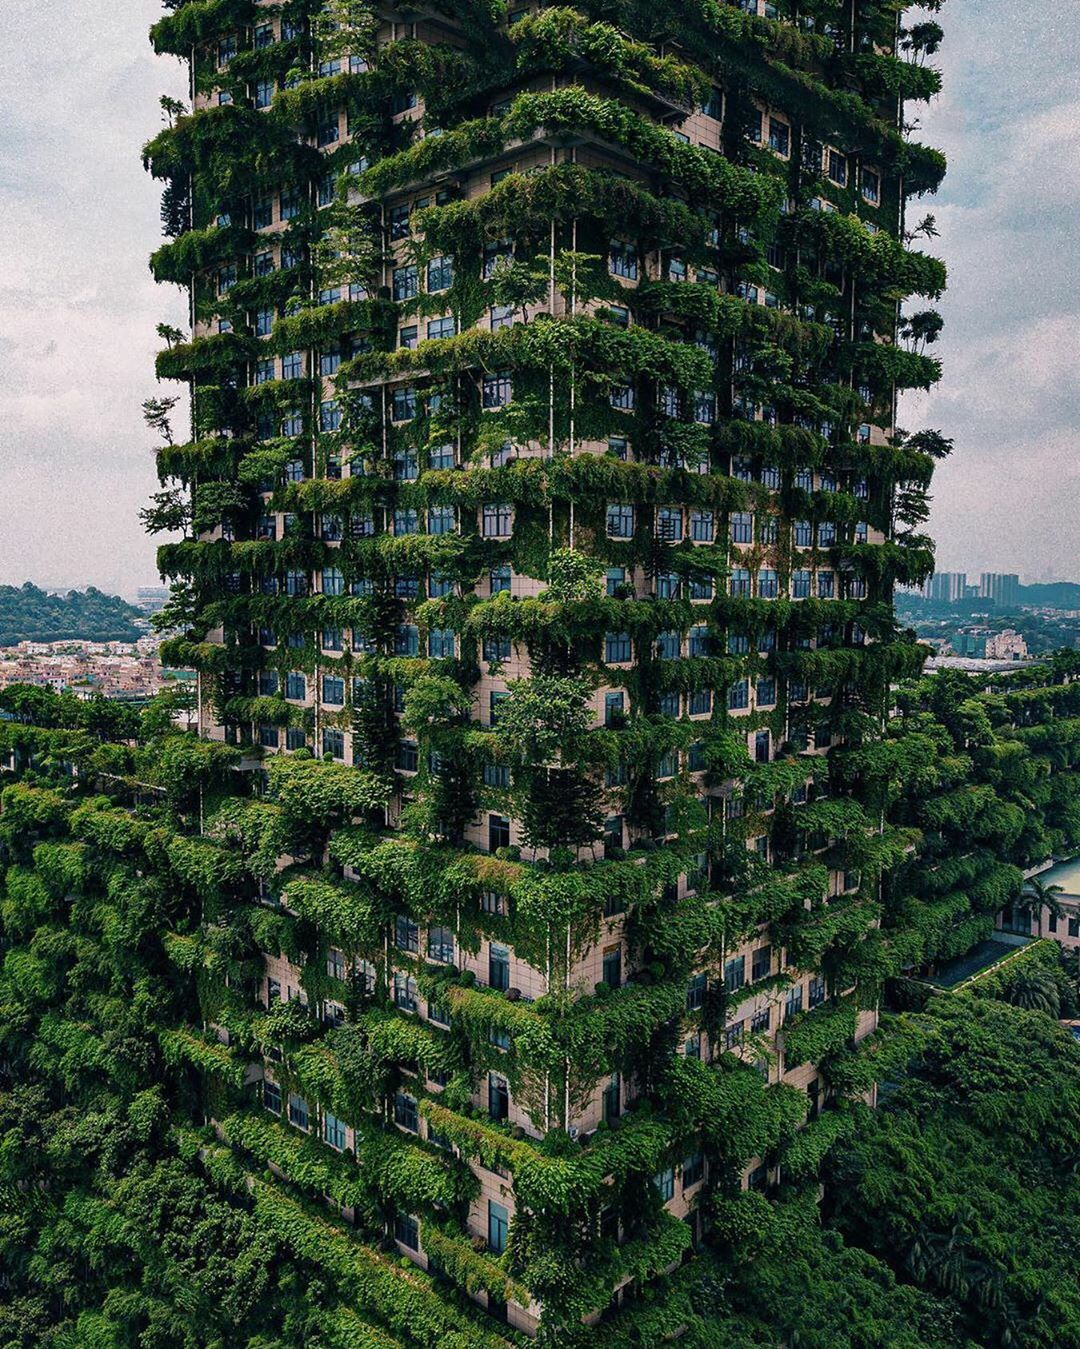 Cette forêt verticale à Foshan, en Chine. Ce bâtiment est enrichi d’une végétation luxuriante qui lutte contre la pollution de l’air en absorbant le CO2 et en produisant de l’oxygène.